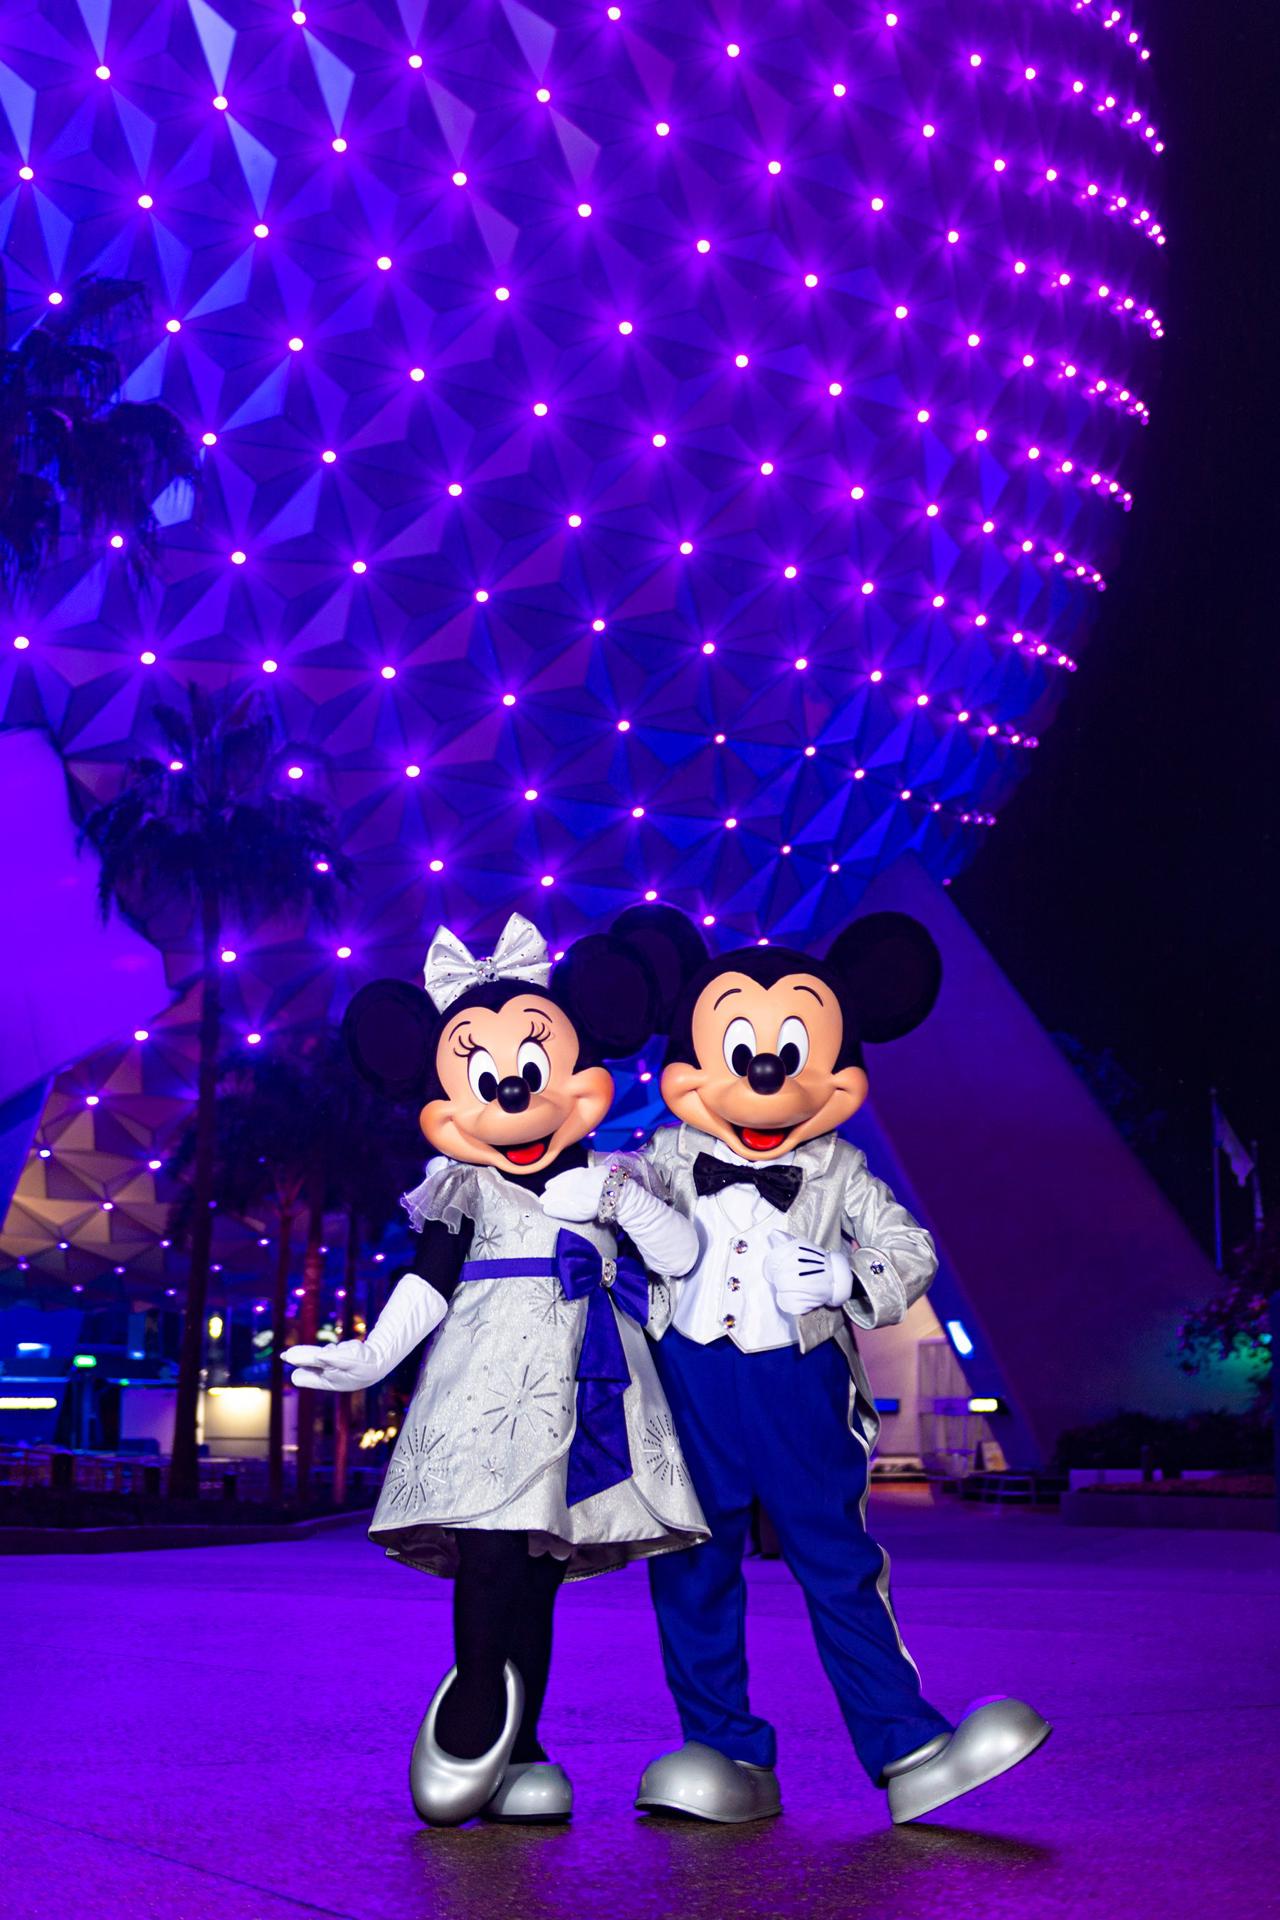 Fotografía cedida por Disney donde aparecen Mickey y Minnie Mouse con sus deslumbrantes trajes platino con ocasión de los 100 años de Disney mientras posan en la entrada del parque temático de EPCOT en Lake Buena Vista, Florida (EE. UU). EFE/Abigail Nilsson/Disney /SOLO USO EDITORIAL /NO VENTAS /SOLO DISPONIBLE PARA ILUSTRAR LA NOTICIA QUE ACOMPAÑA /CRÉDITO OBLIGATORIO
